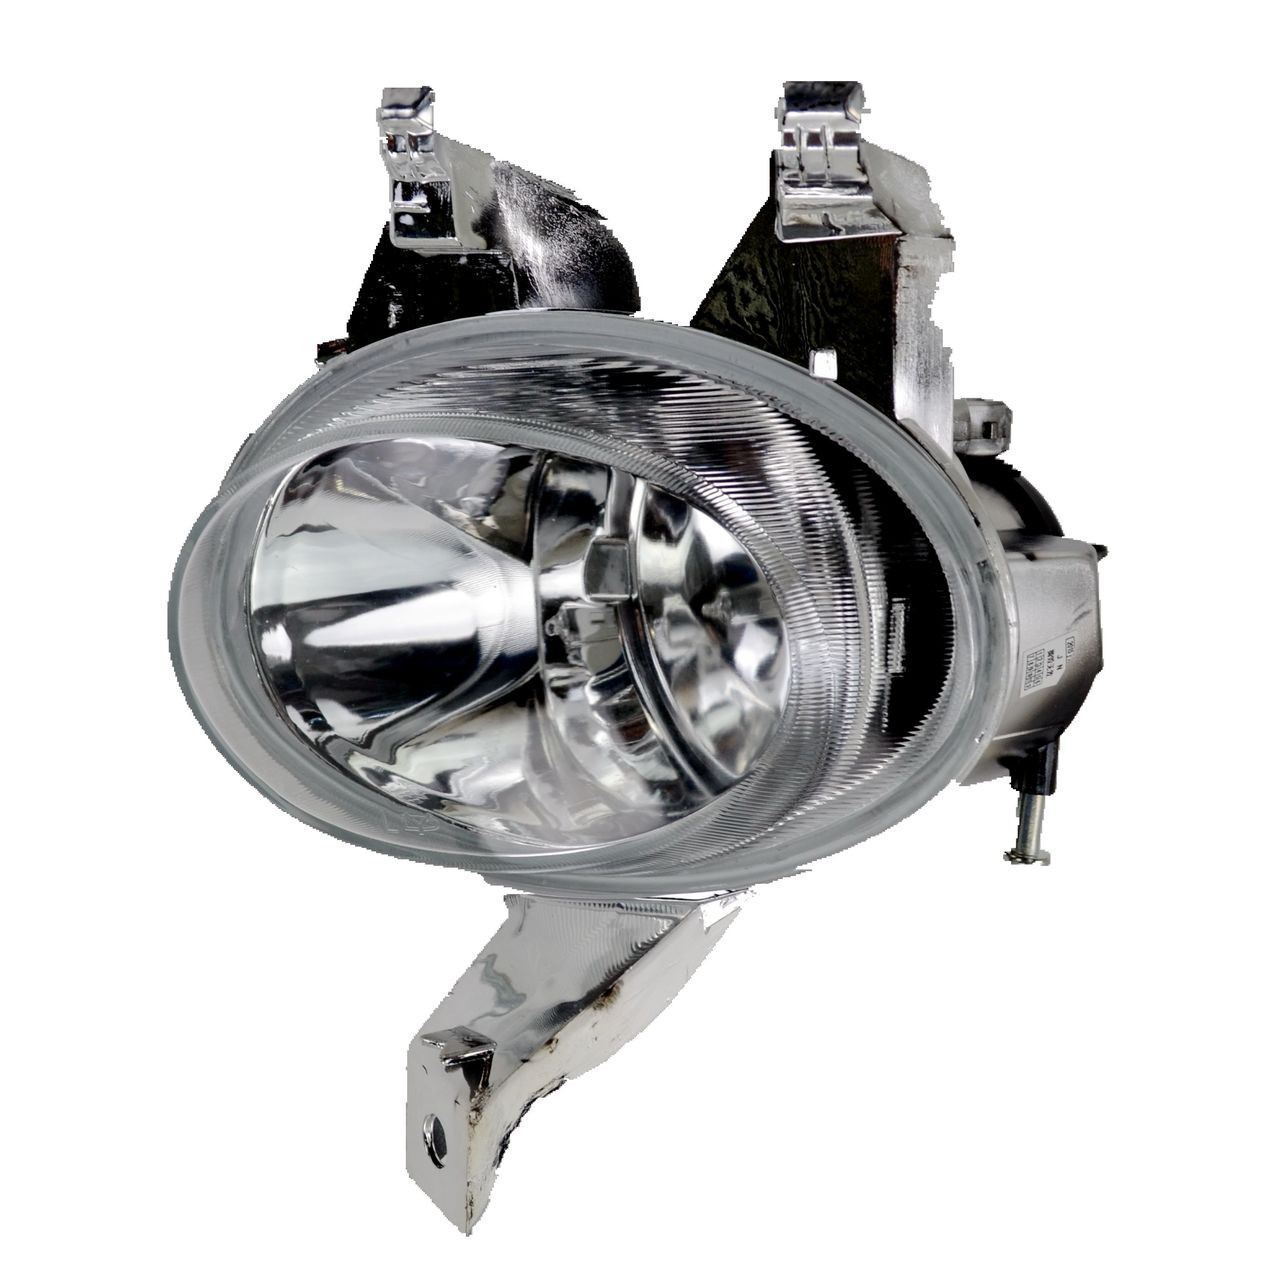 Fog light for Peugeot 206 T1 10/99-01/07 New Left LHS Spot Lamp XR 00 02 03 04 05 06